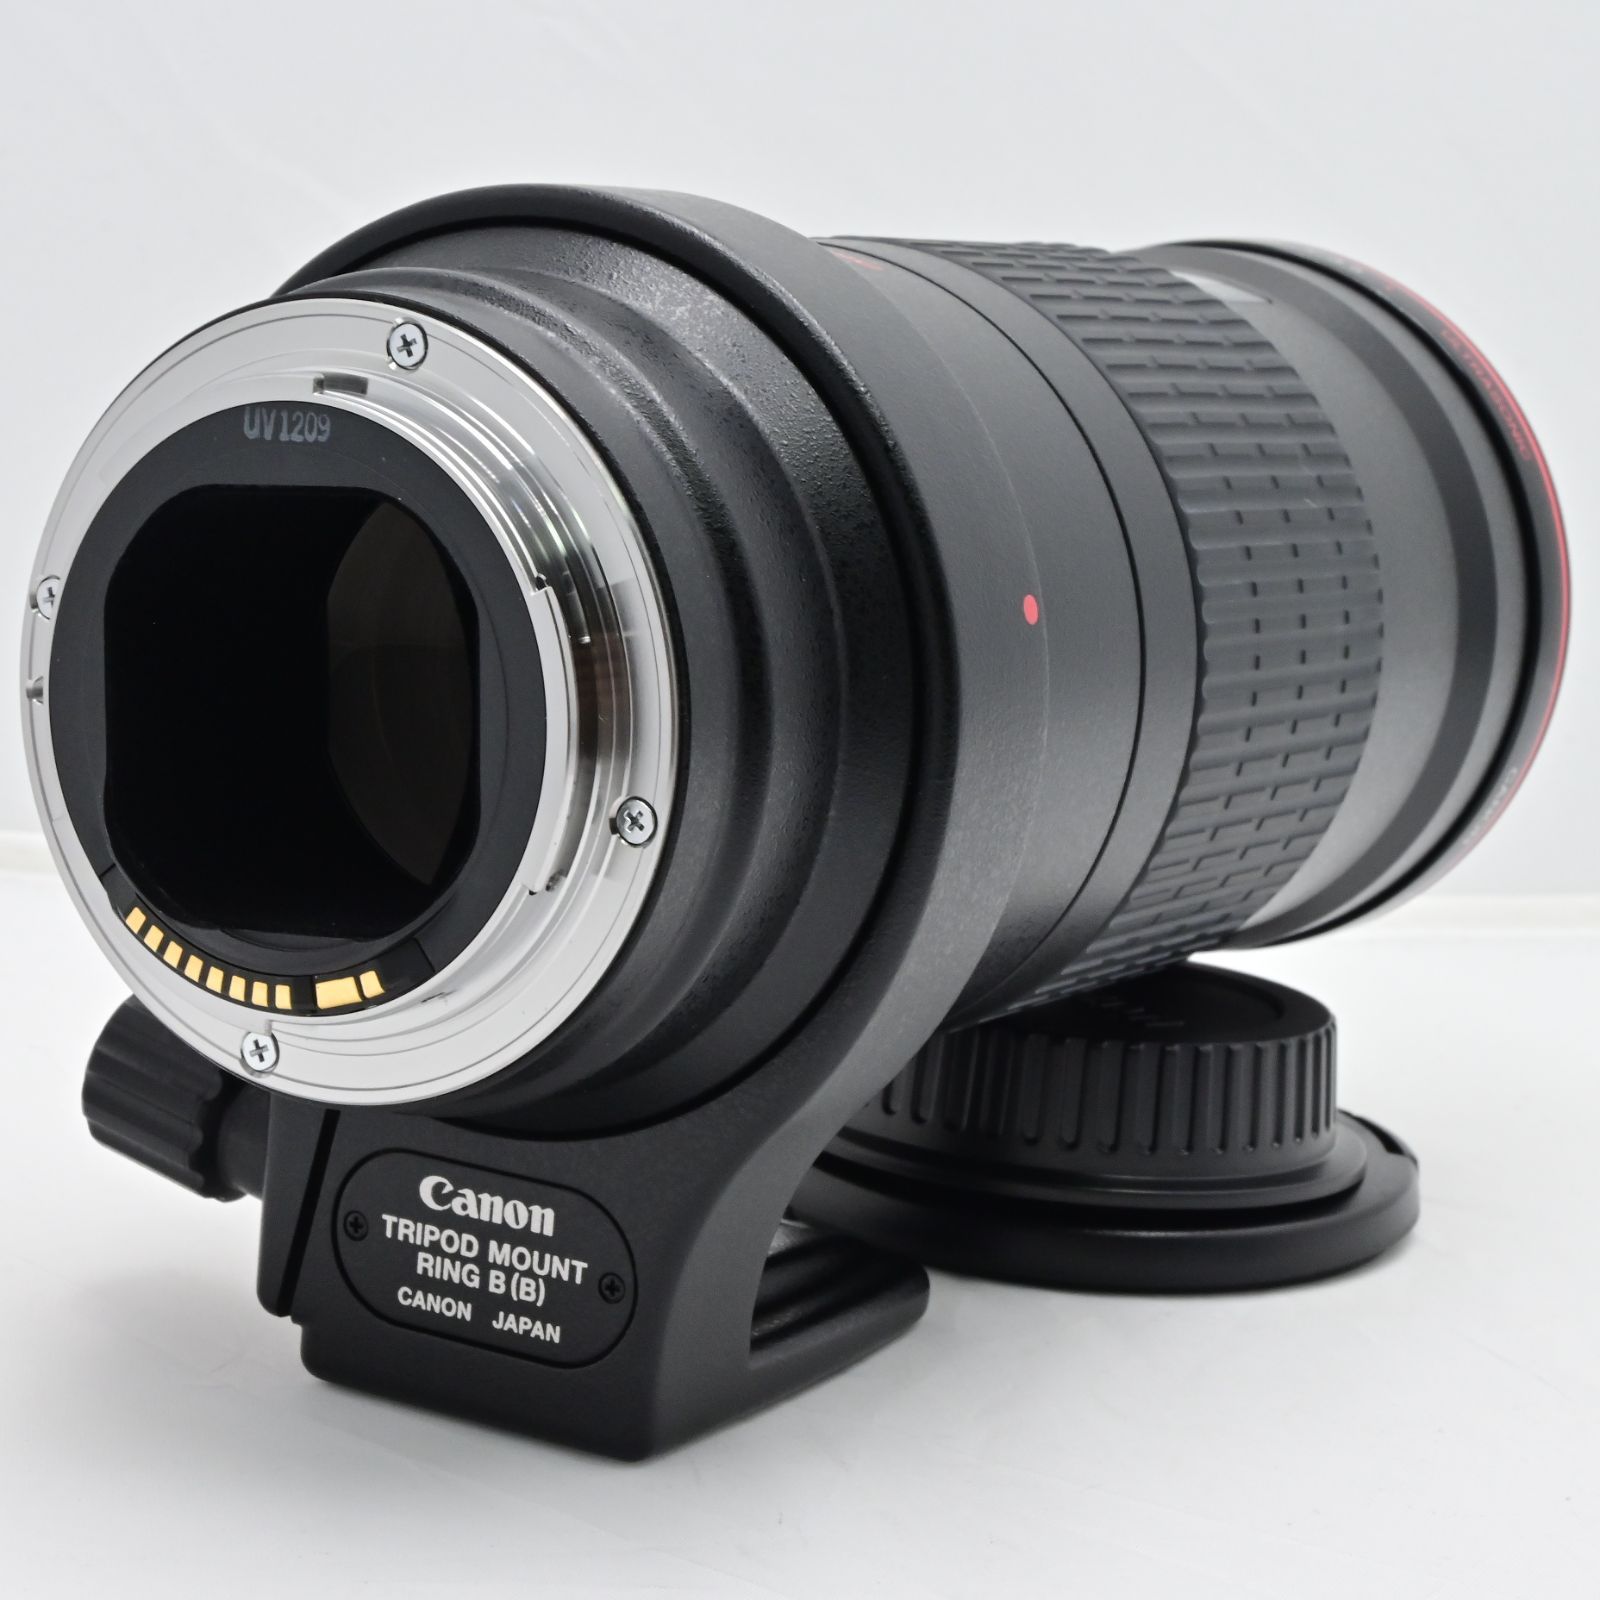 モールブティック割引 Canon 単焦点マクロレンズ EF180mm F3.5L マクロ